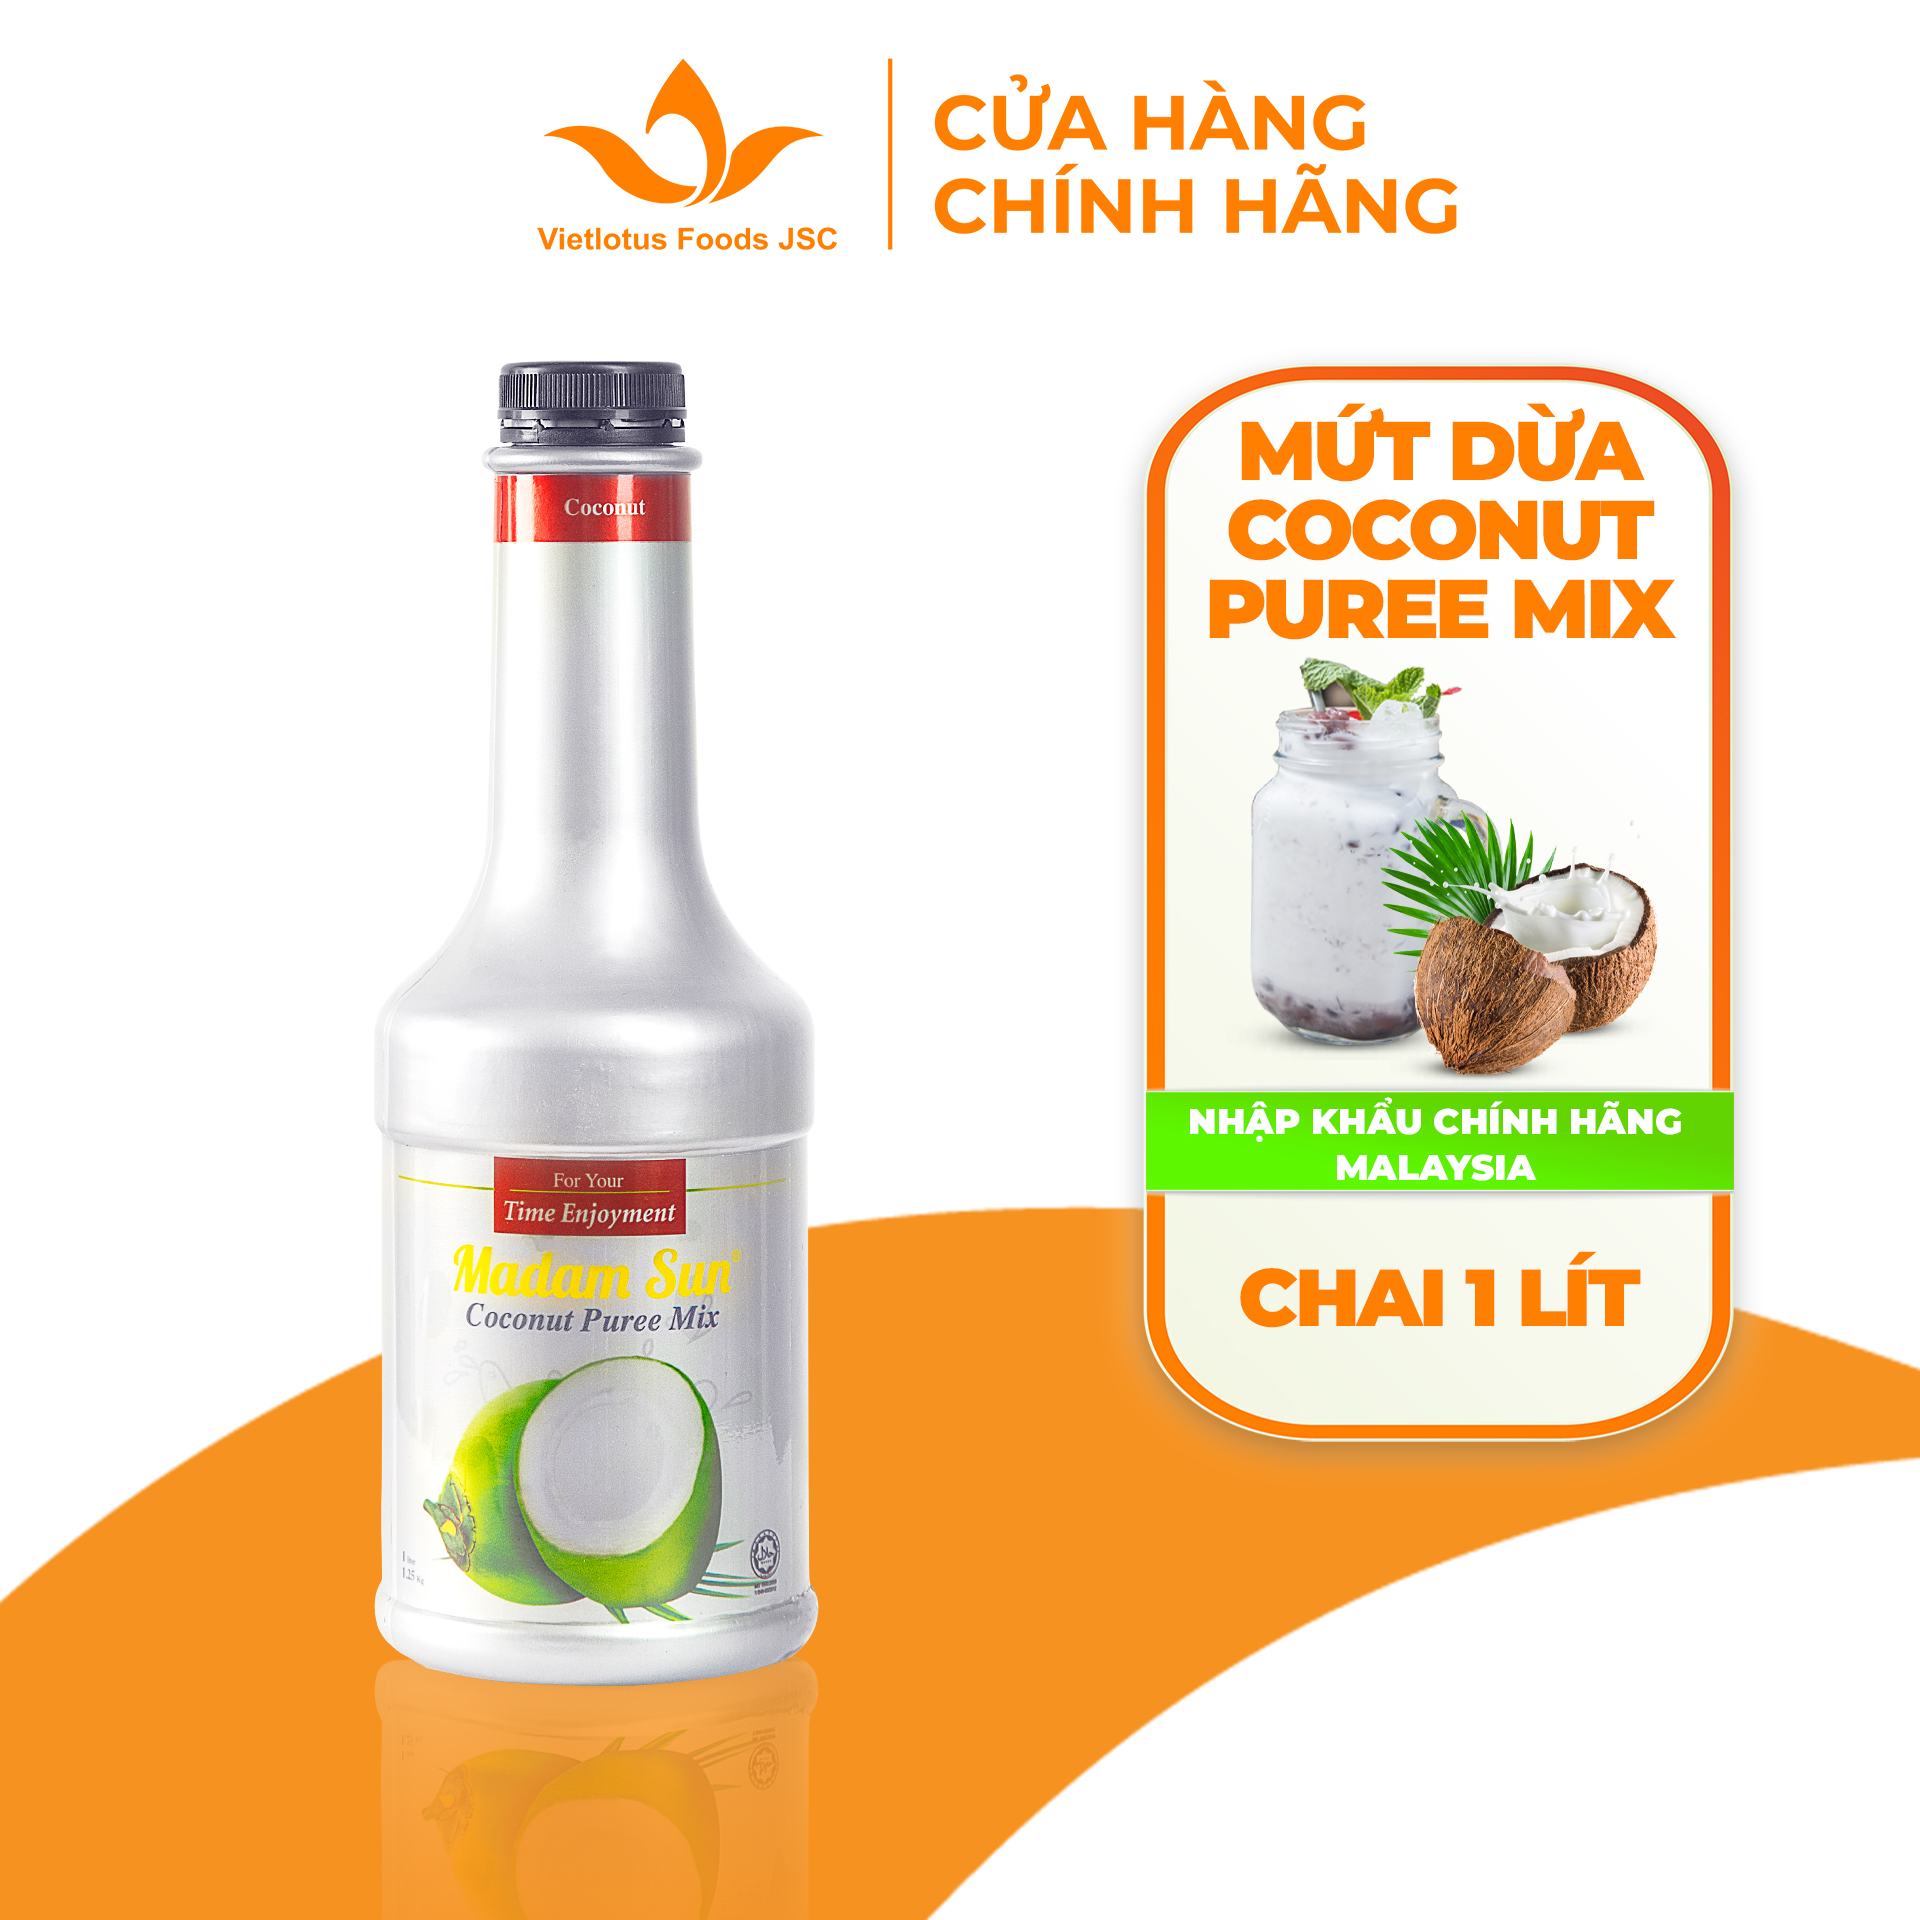 Mứt trái cây pha chế Madamsun vị Dừa (Coconut Puree Mix) chai 1L - Hàng nhập khẩu Malaysia